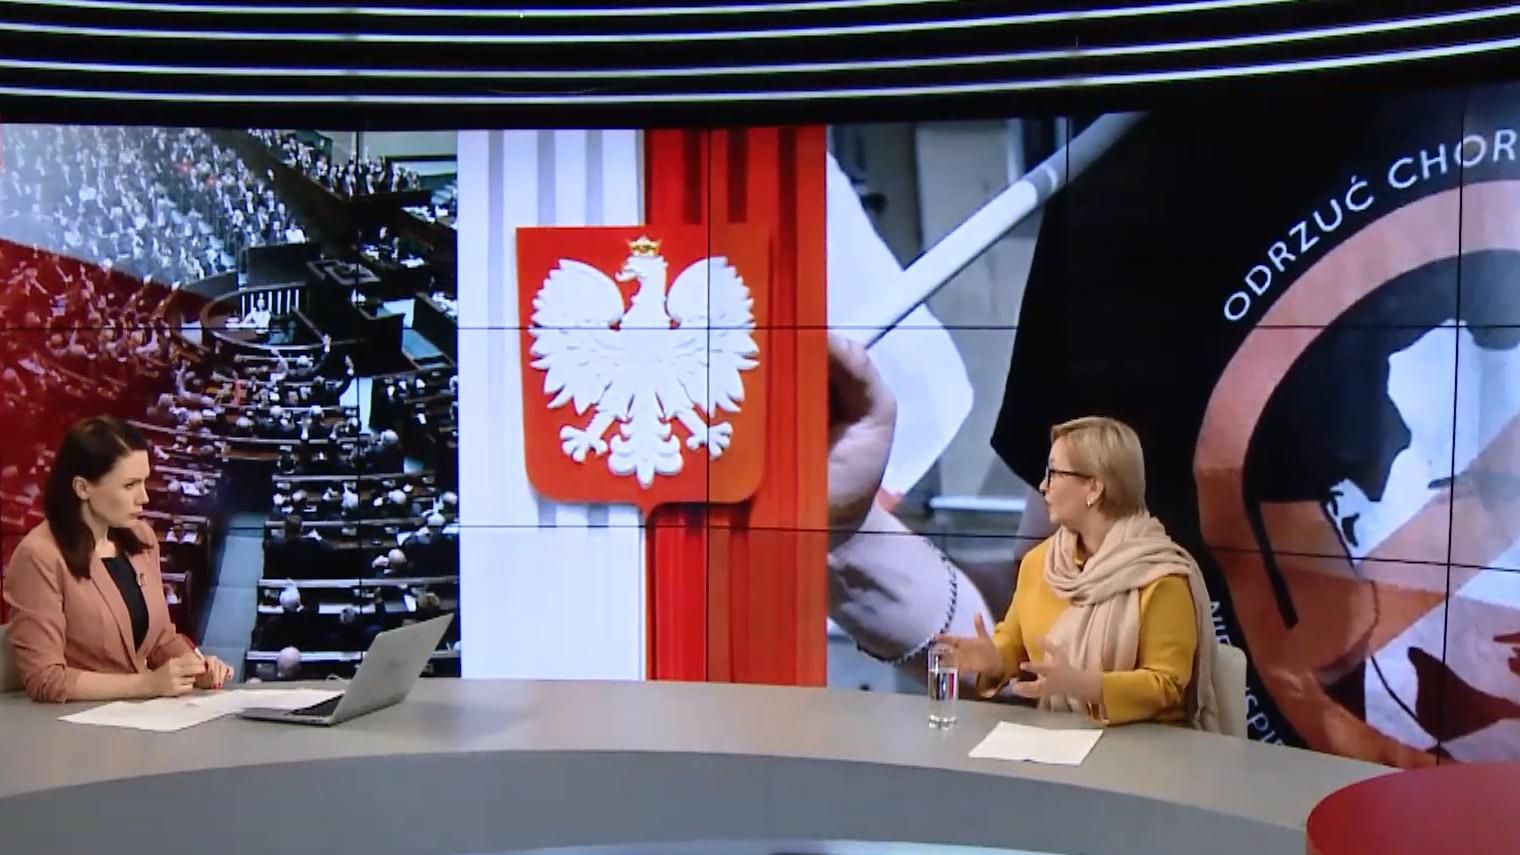 Польща пішла агресивним шляхом, – нардеп Подоляк про "антибандерівський" закон